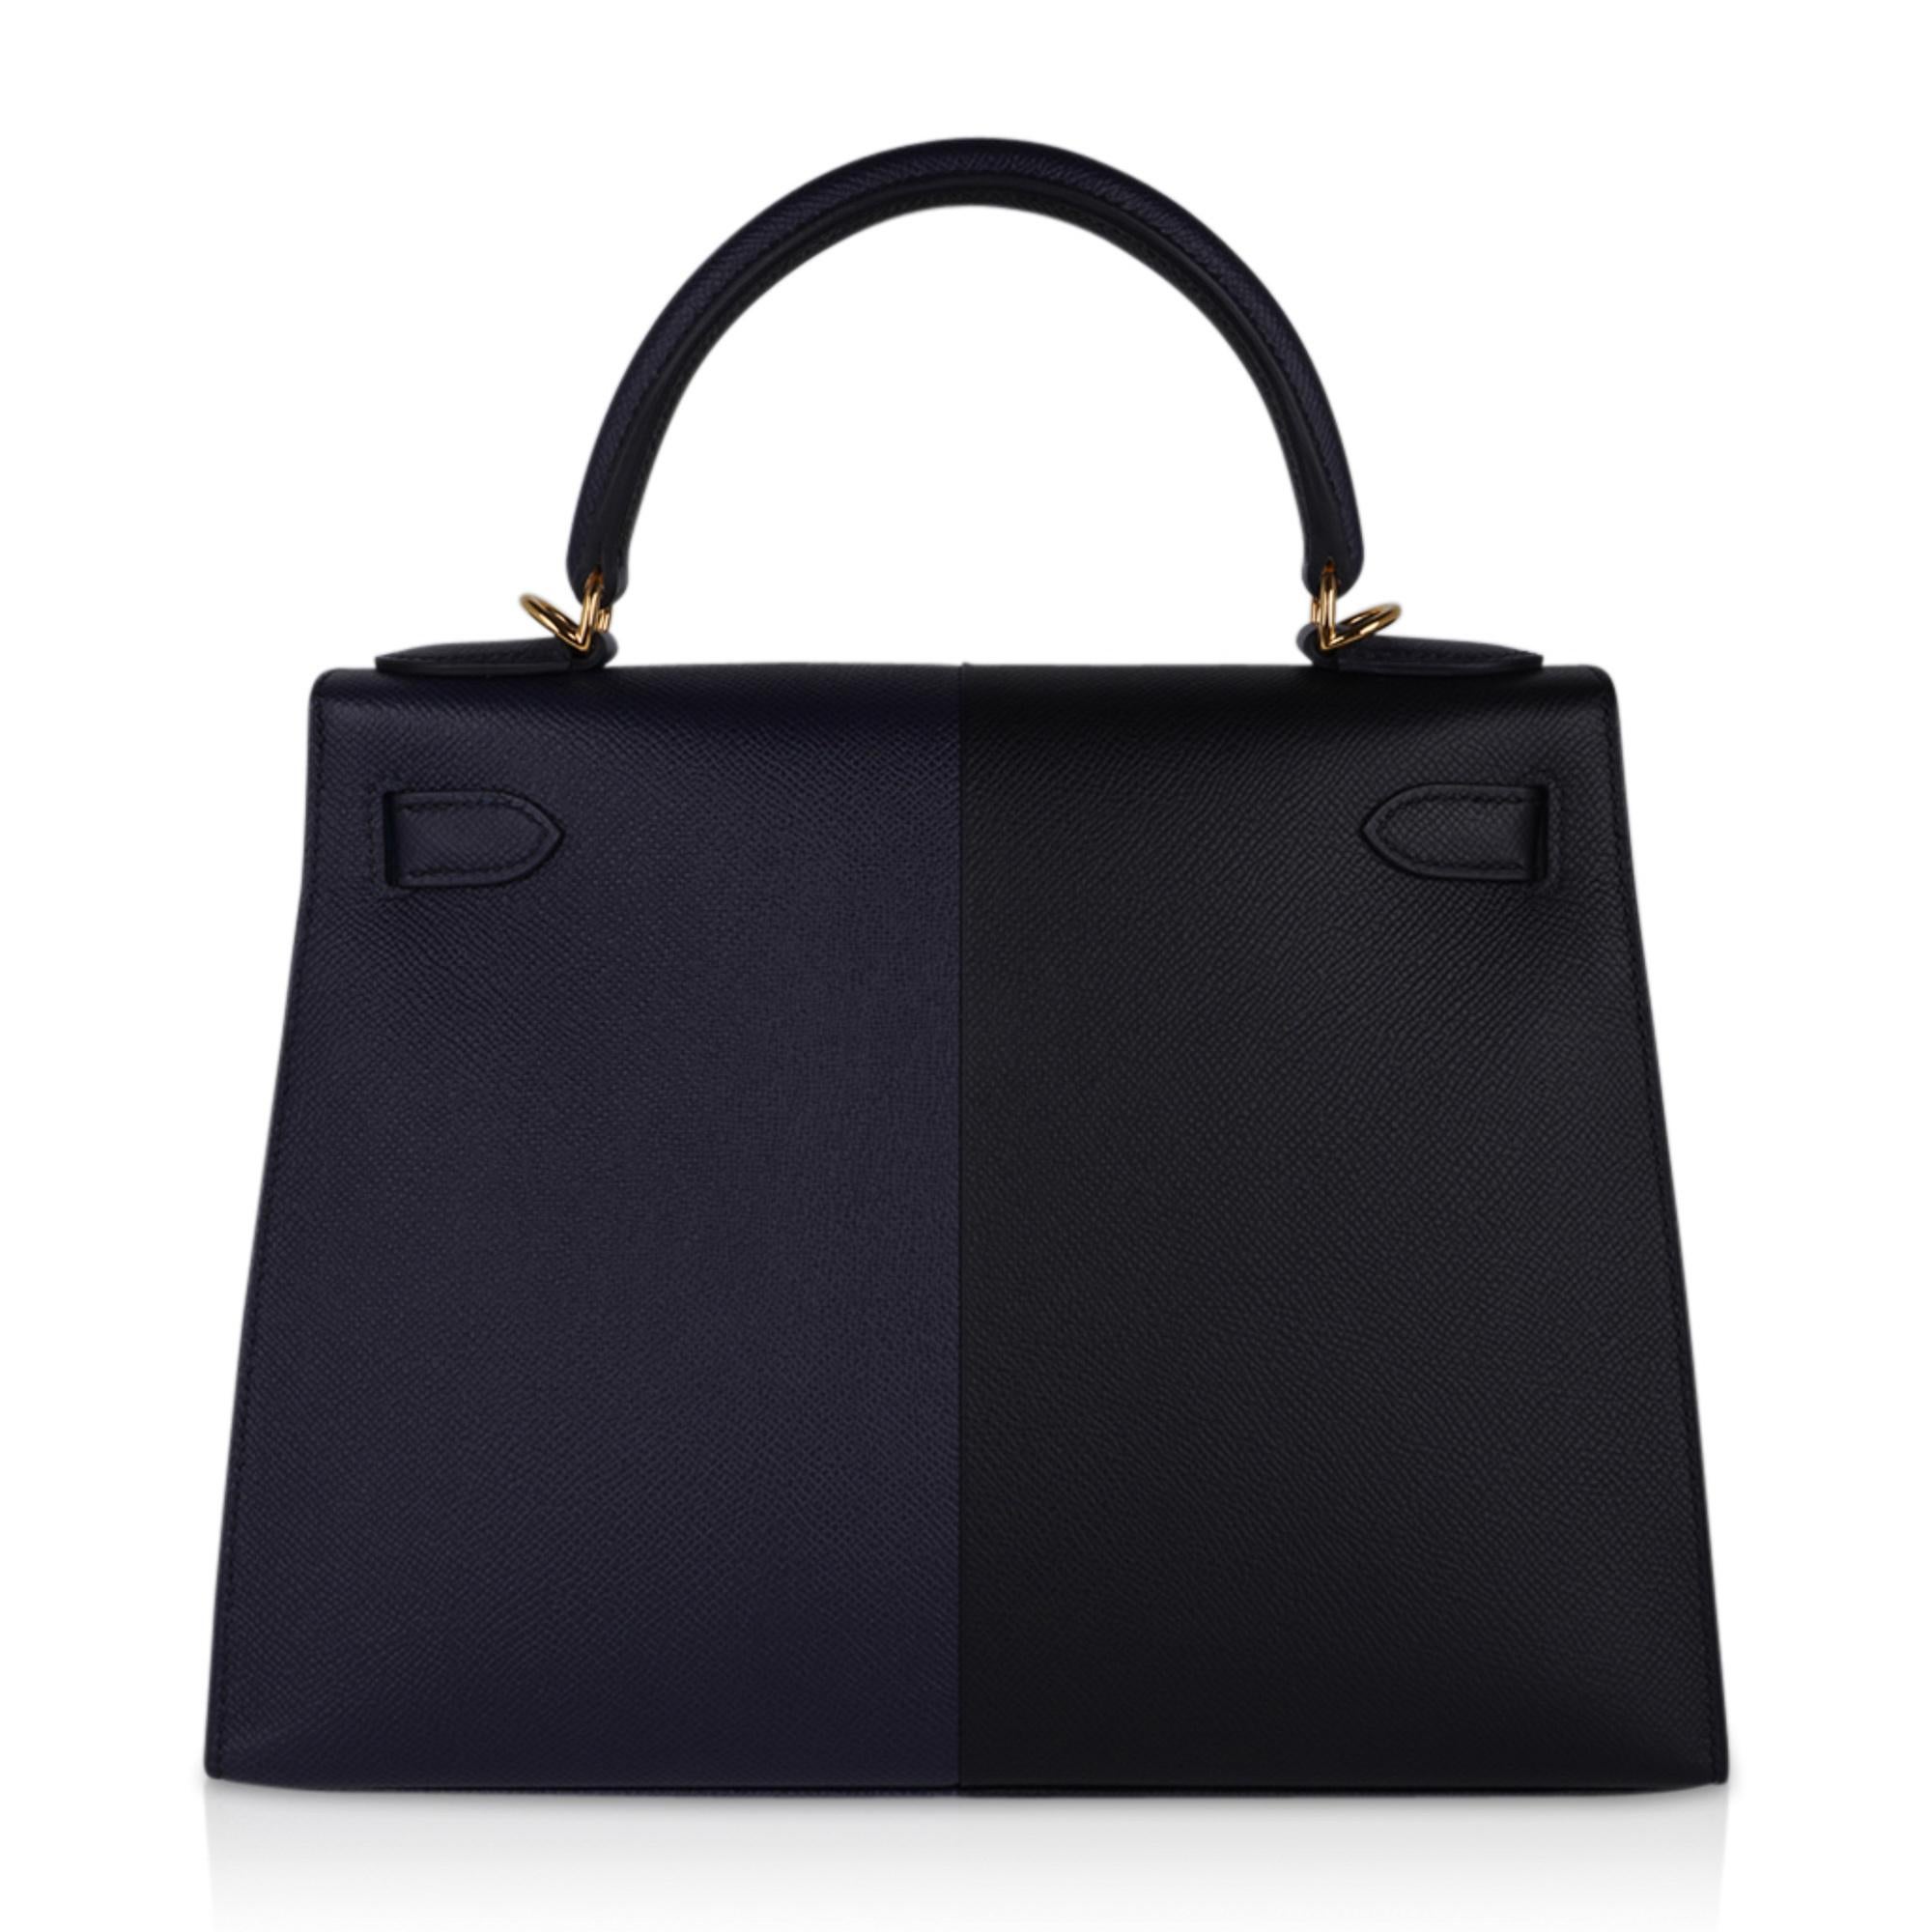 Hermes Kelly Casaque 28 Bag Black / Bleu Indigo Sellier Limited Edition 6